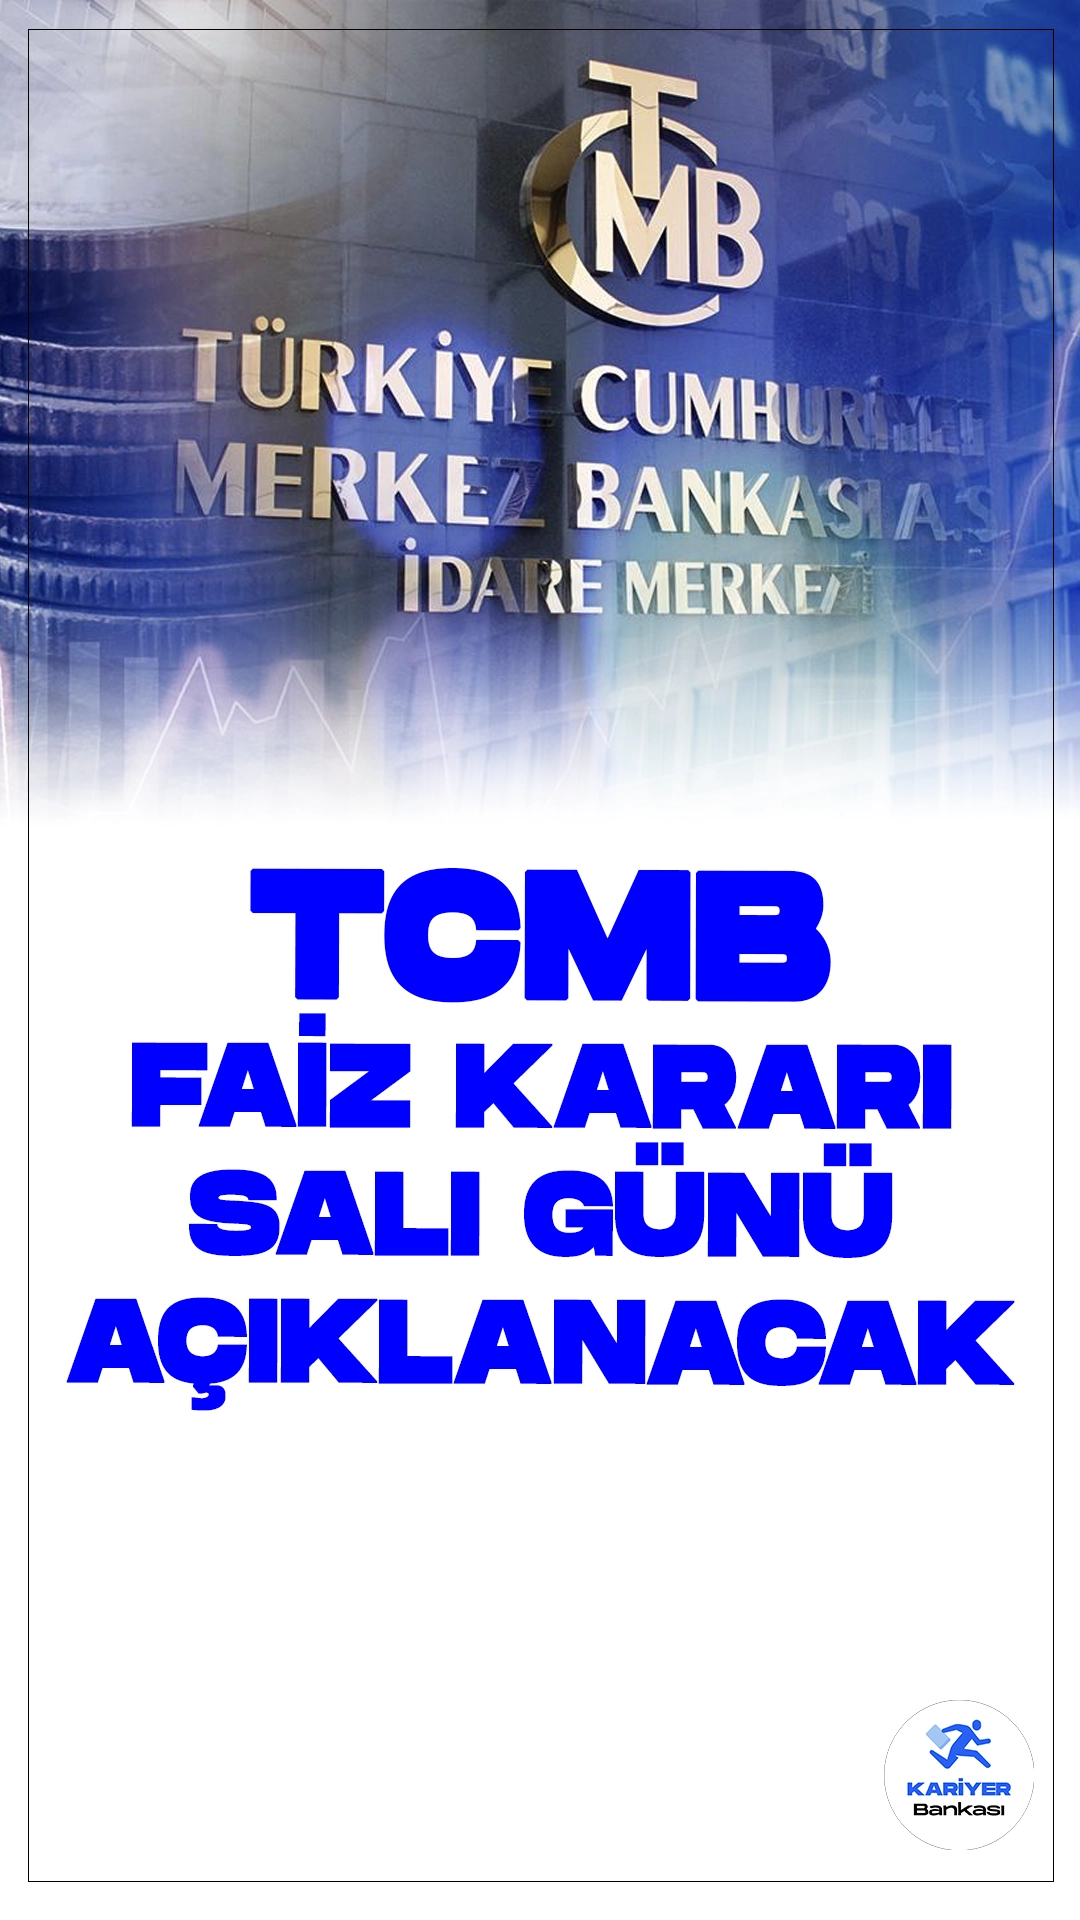 TCMB Faiz Kararını Salı Günü Açıklayacak.Türkiye Cumhuriyet Merkez Bankası (TCMB) Para Politikası Kurulu, 23 Temmuz Salı günü Merkez Bankası Başkanı Fatih Karahan başkanlığında toplanacak. Saat 14.00'te faiz kararı açıklanacak. Bir önceki toplantıda politika faizi %50 seviyesinde sabit tutulmuştu.